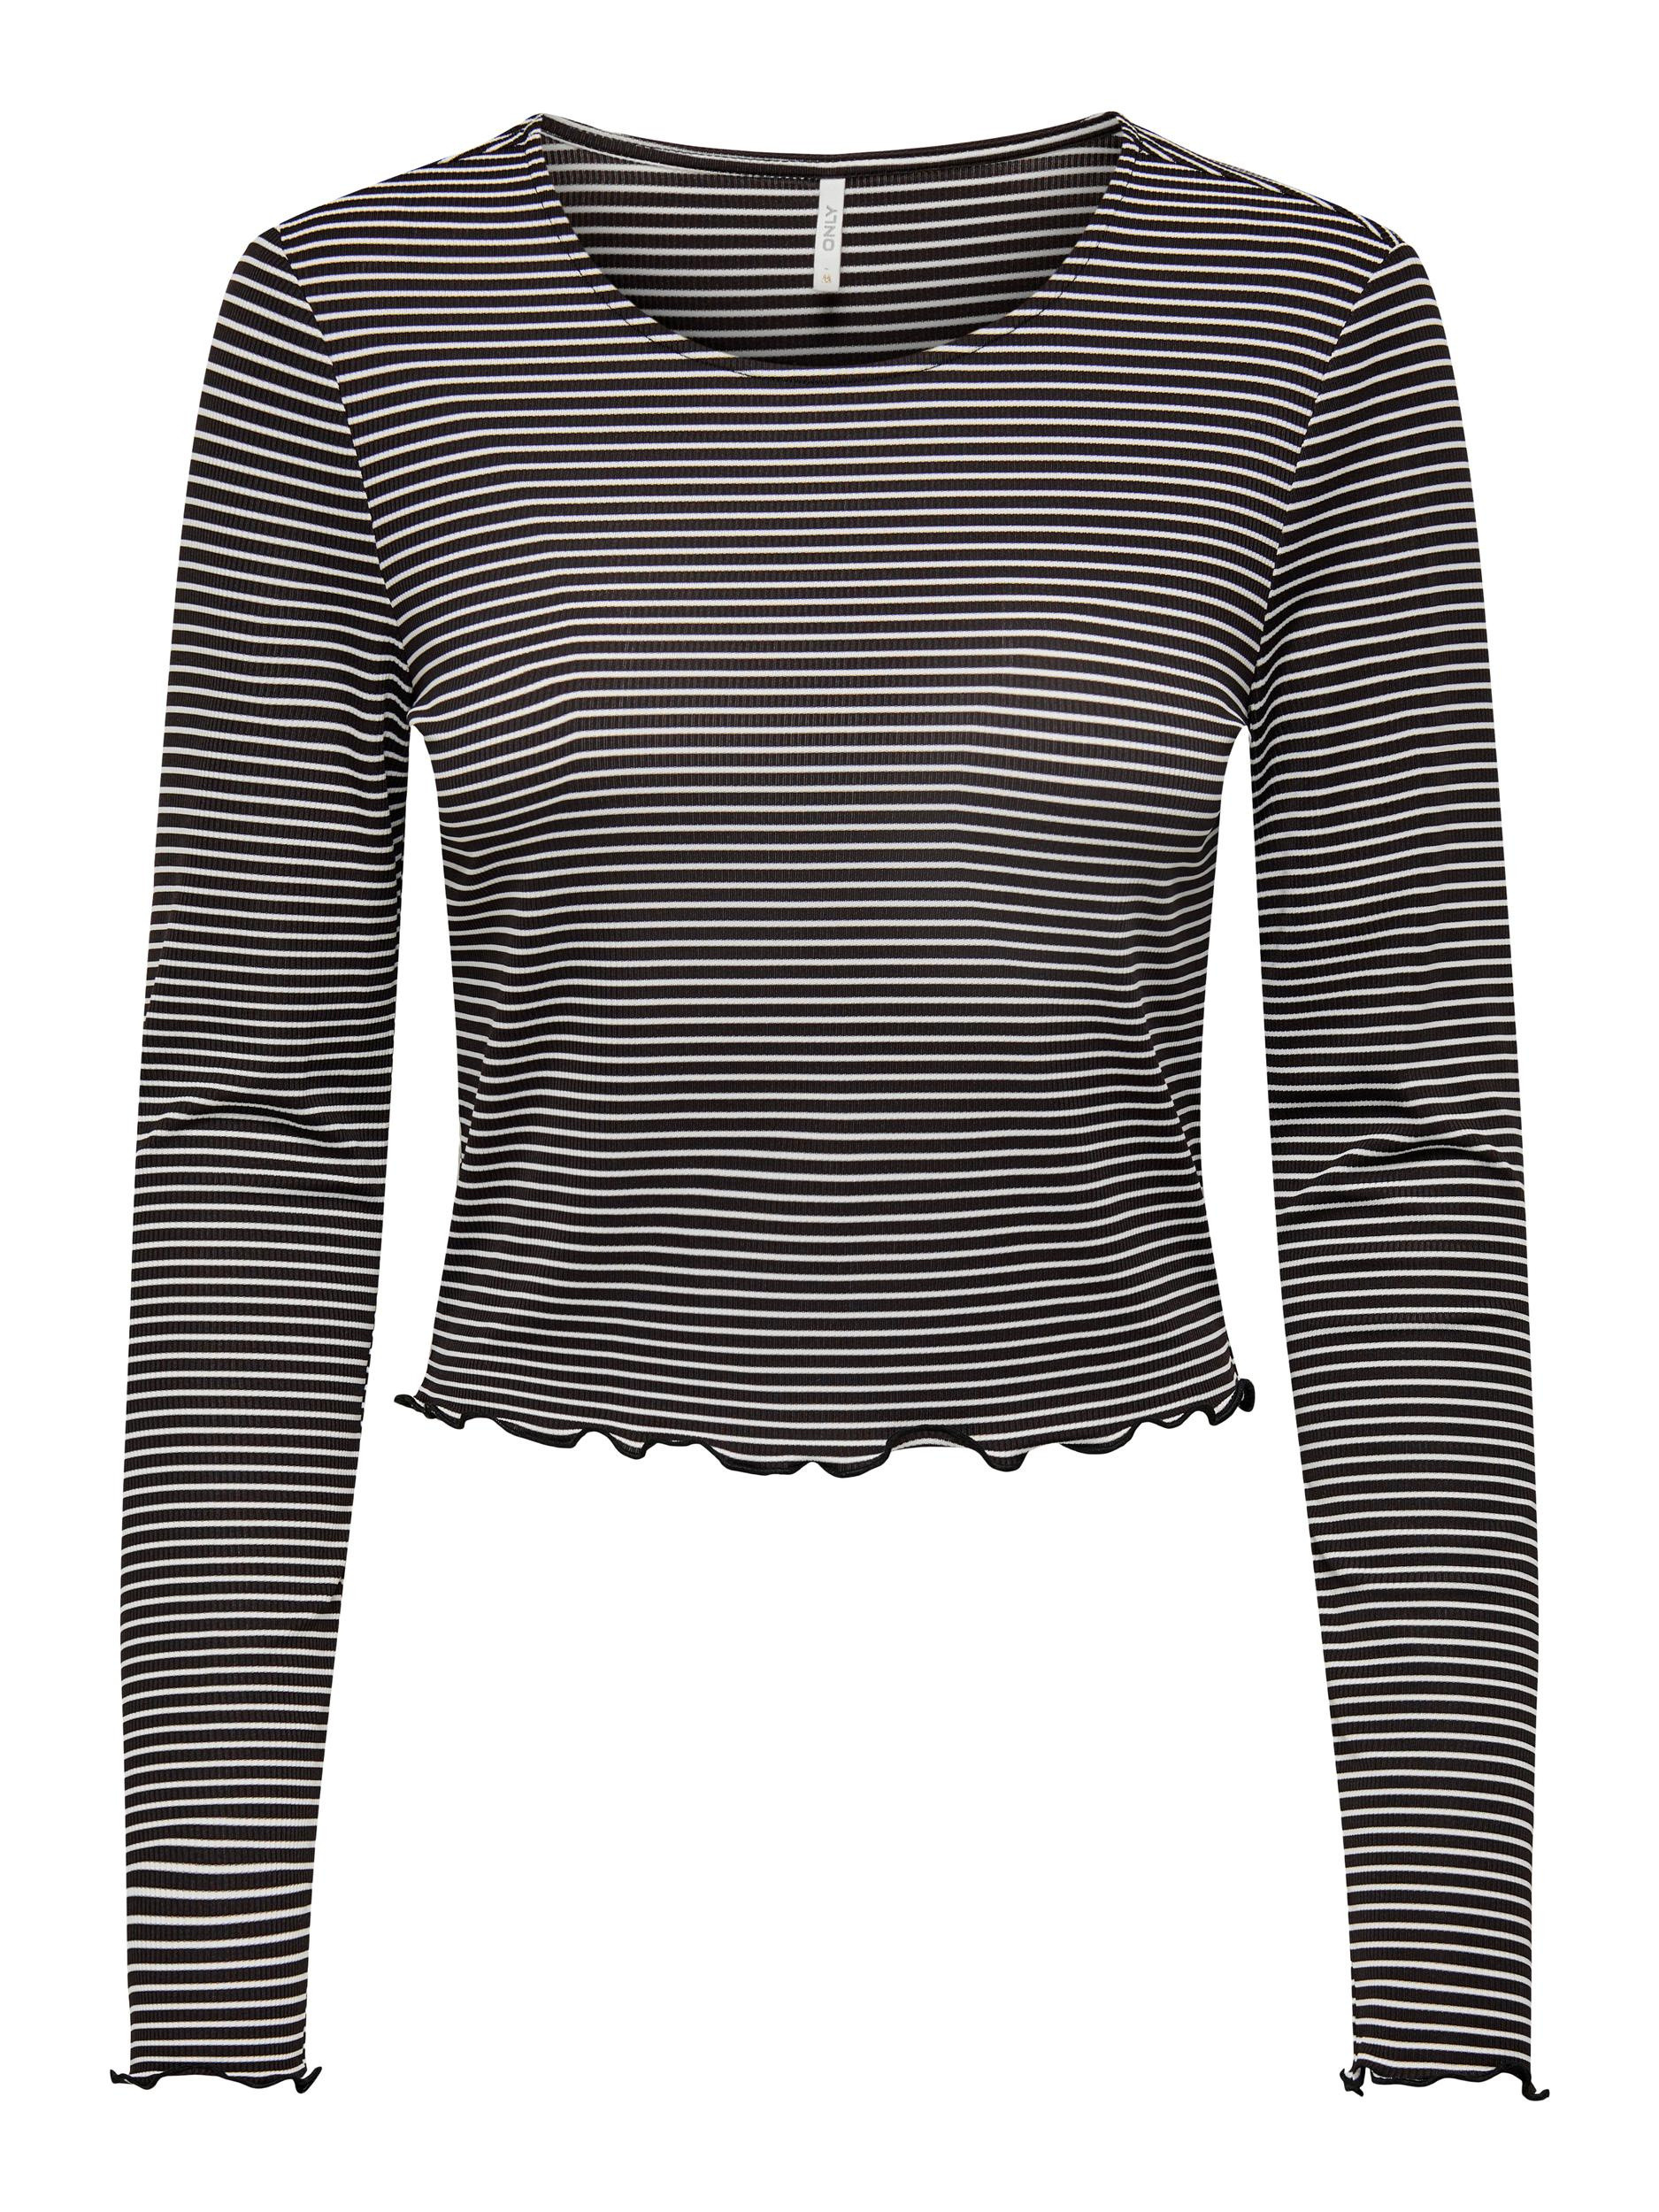 Only - Regular fit striped top, Black, large image number 0